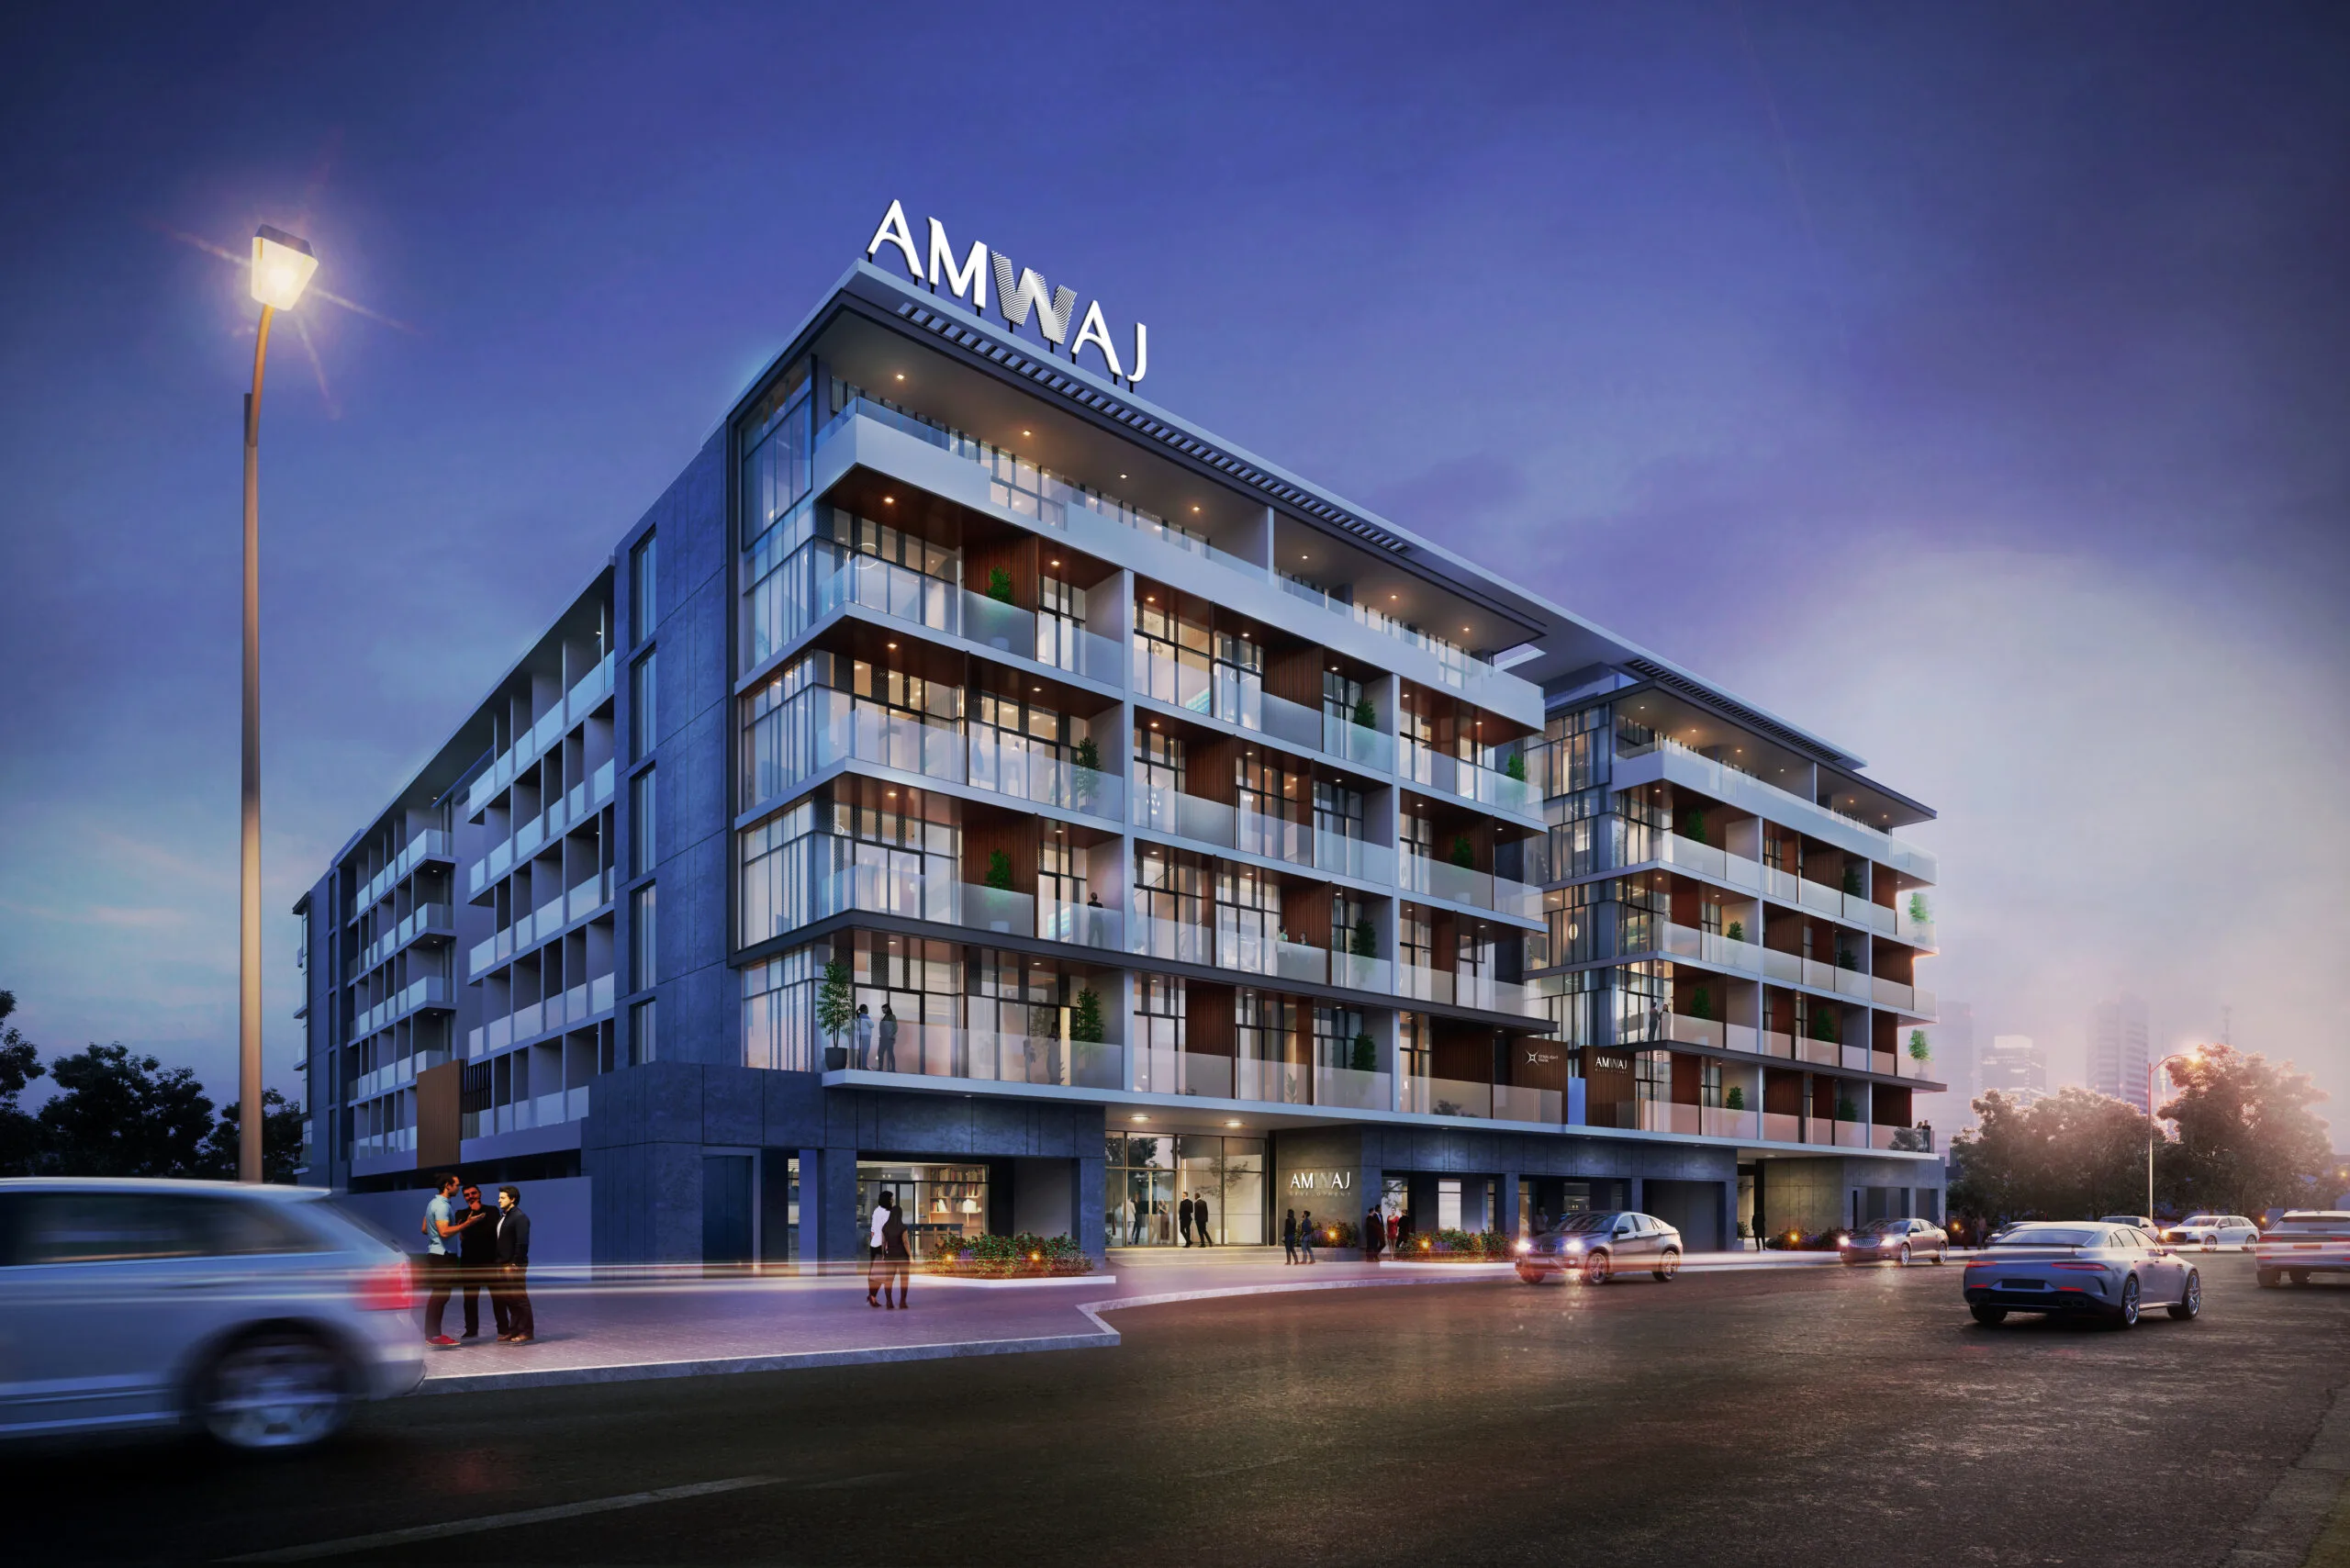 AMWAJ Development debuts in Dubai's real estate market with Starlight Parkظهرت شركة أمواج للتطوير لأول مرة في سوق العقارات في دبي من خلال ستارلايت بارك